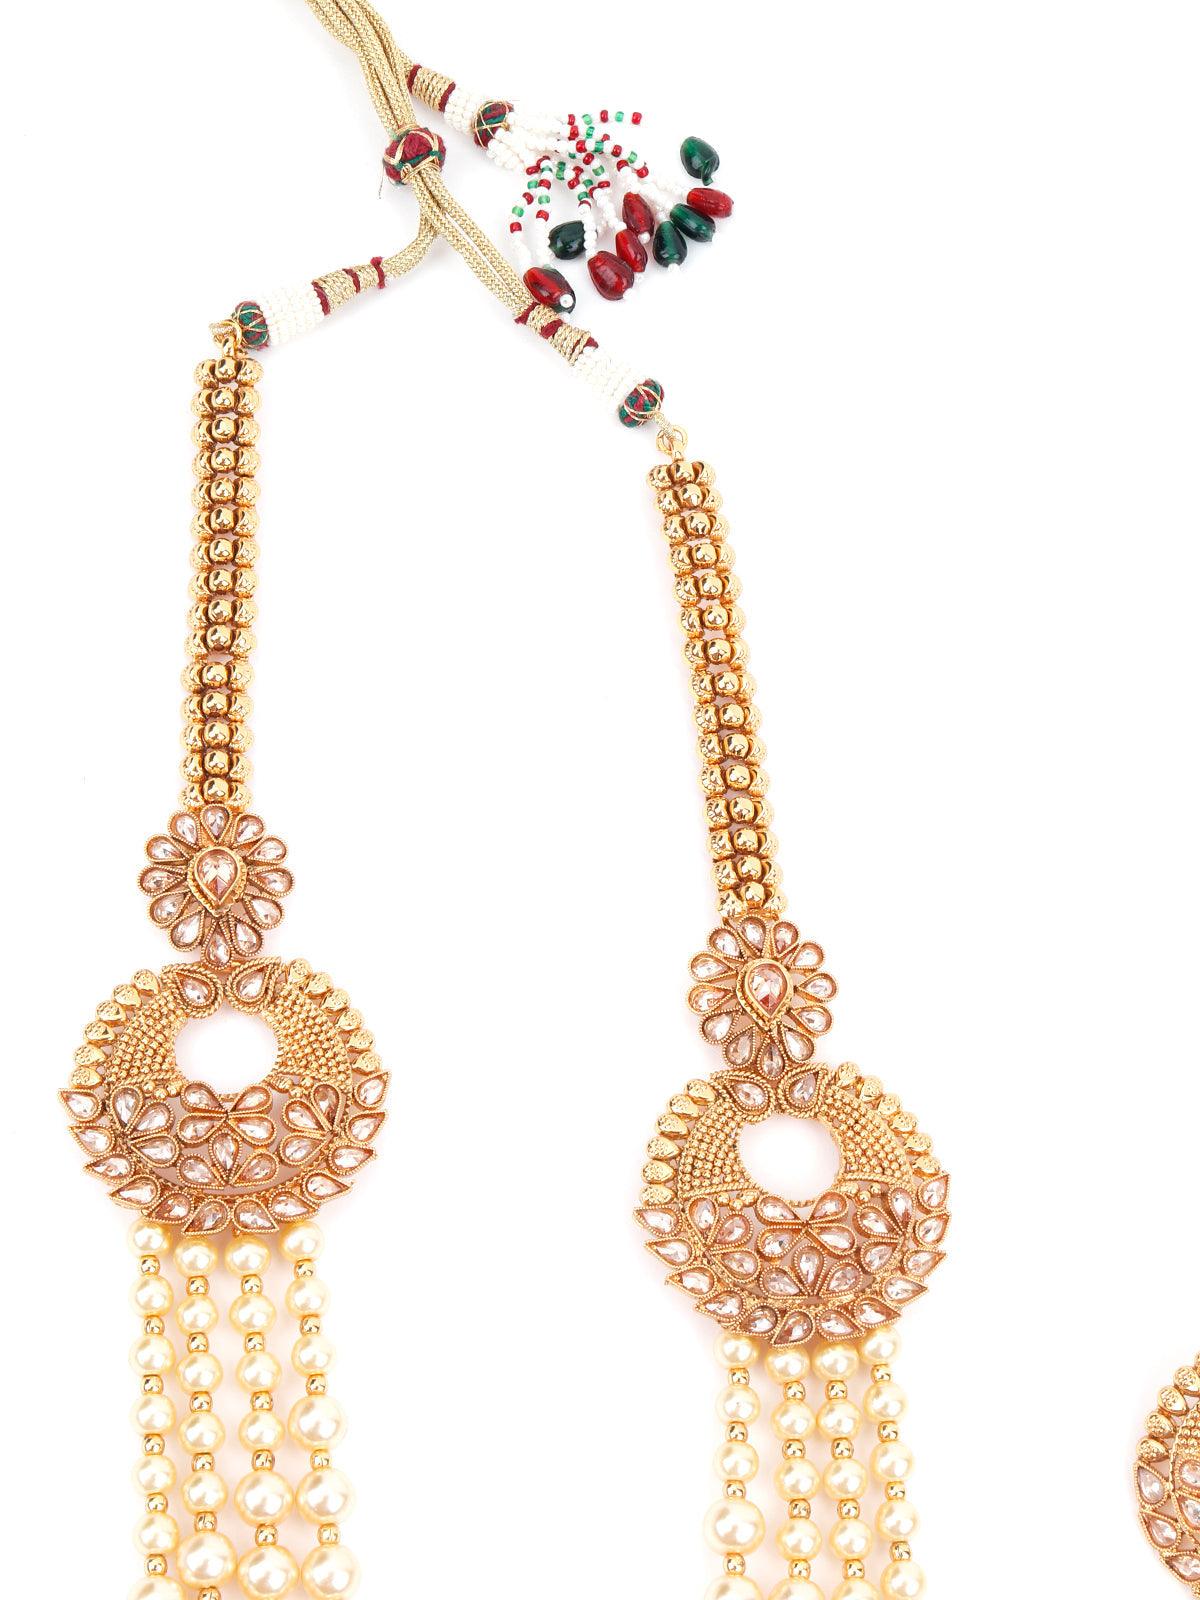 Ornate Pearl Dazzling Necklace Set - Odette